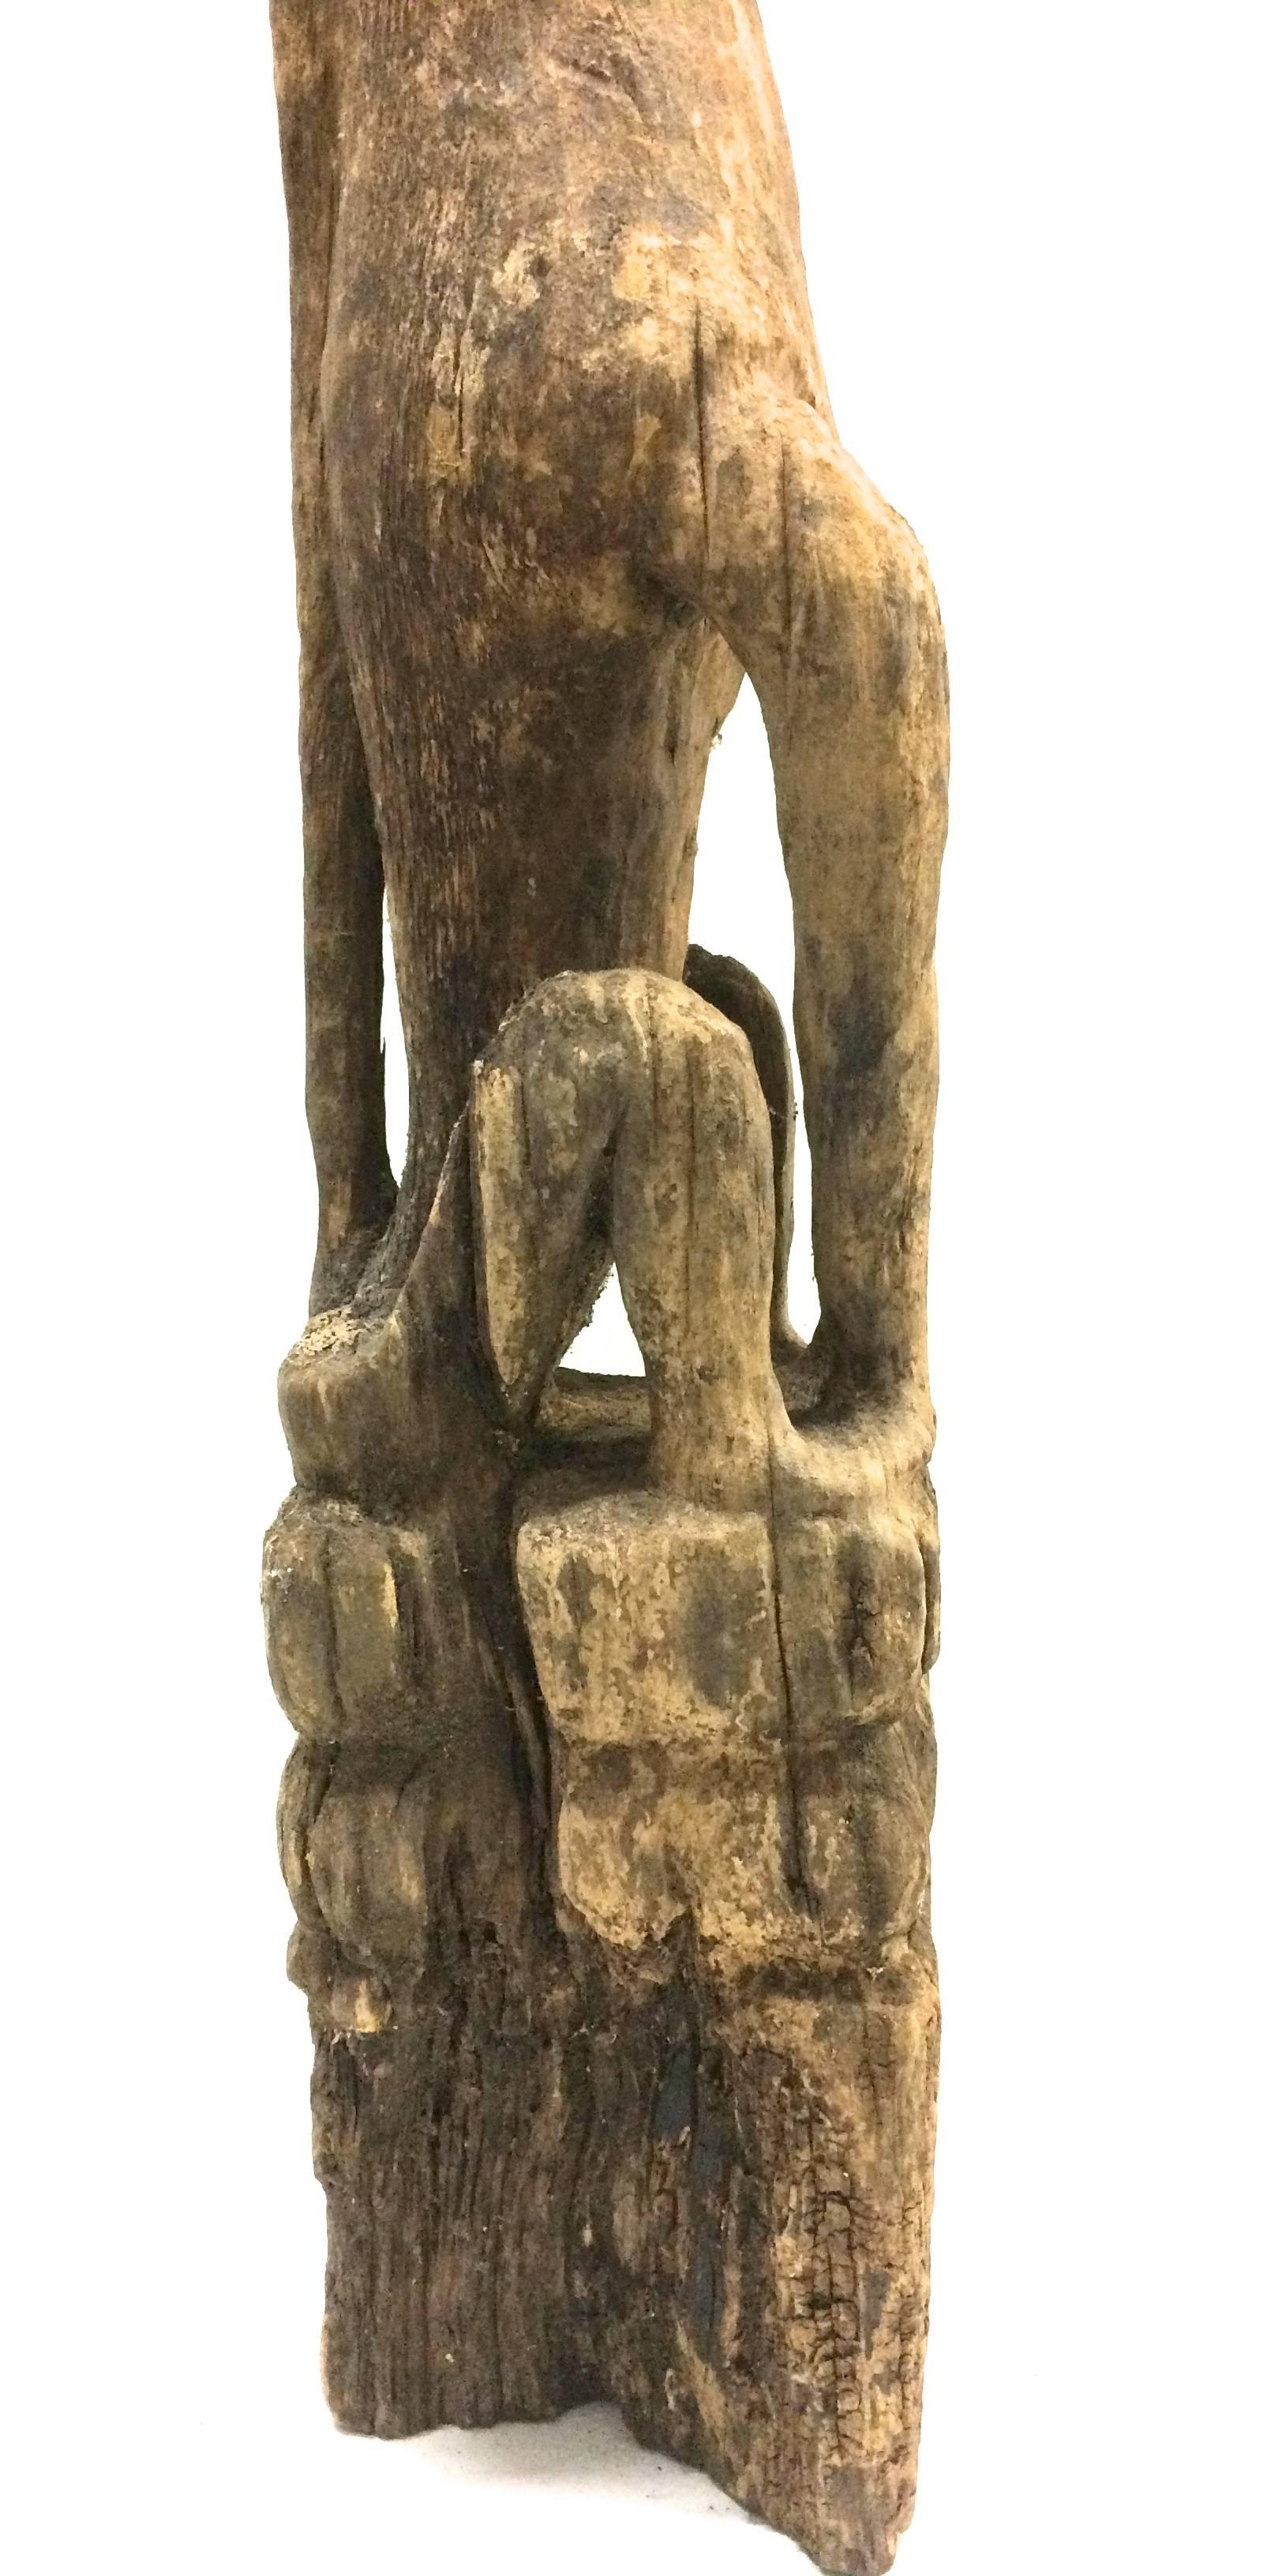 
Rare figurine de chien de garde, île de Kalimantan, 19e siècle. Cette figurine a été sculptée dans une seule pièce de bois de fer très solide et dur. La statue d'un chien devait protéger la maison contre les dangers. Dans l'état d'origine de